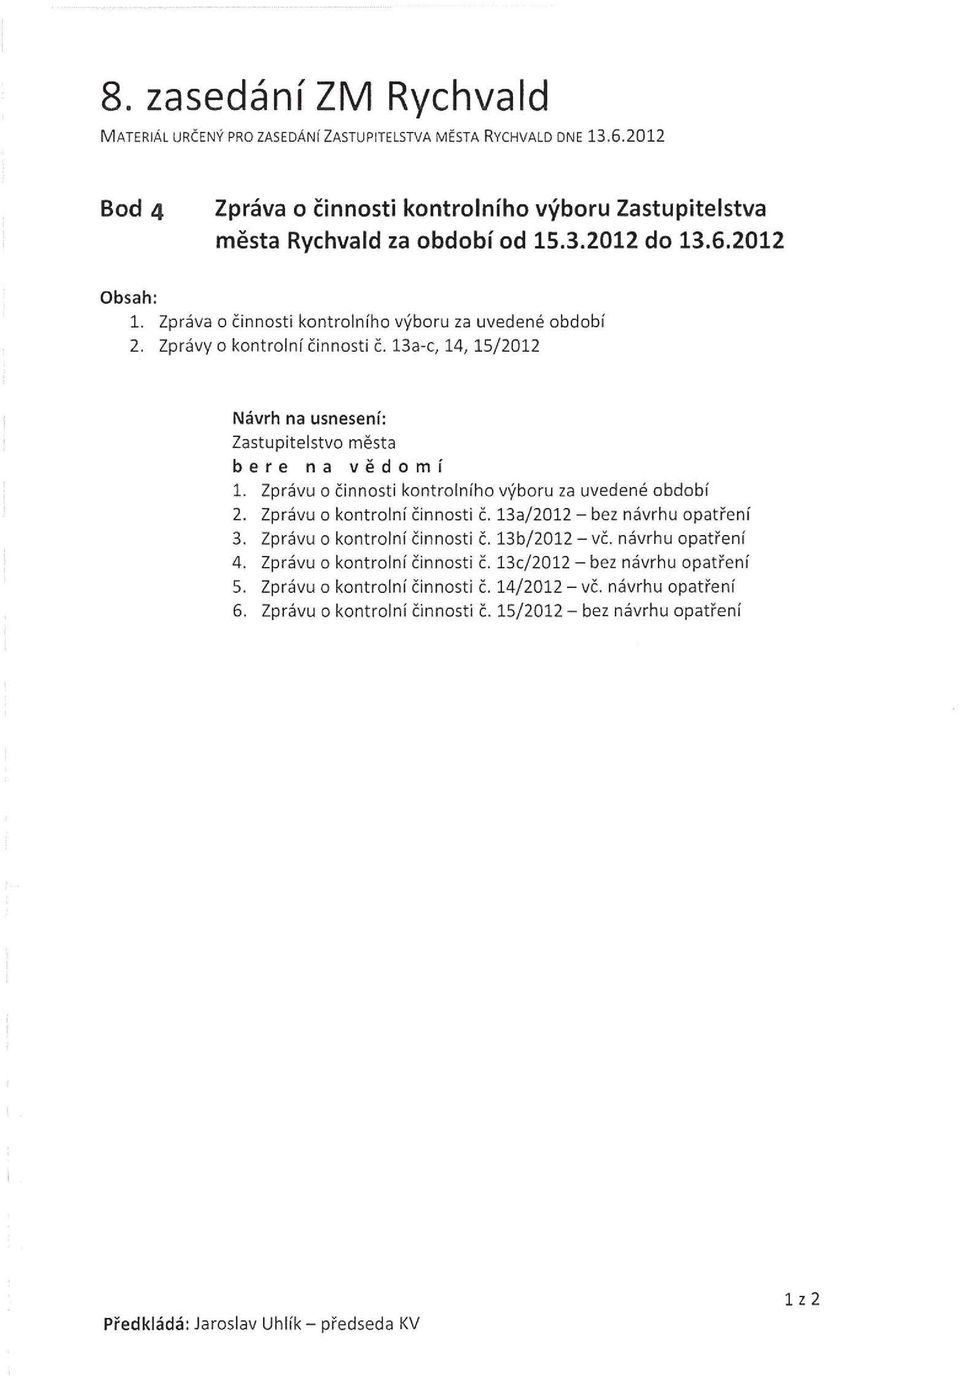 Zprávu o činnosti kontrolního výboru za uvedené období 2. Zprávu o kontrolní činnosti č. 13a/2012- bez návrhu opatření 3. Zprávu o kontrolní činnosti č. 13b/2012- vč. návrhu opatření 4.